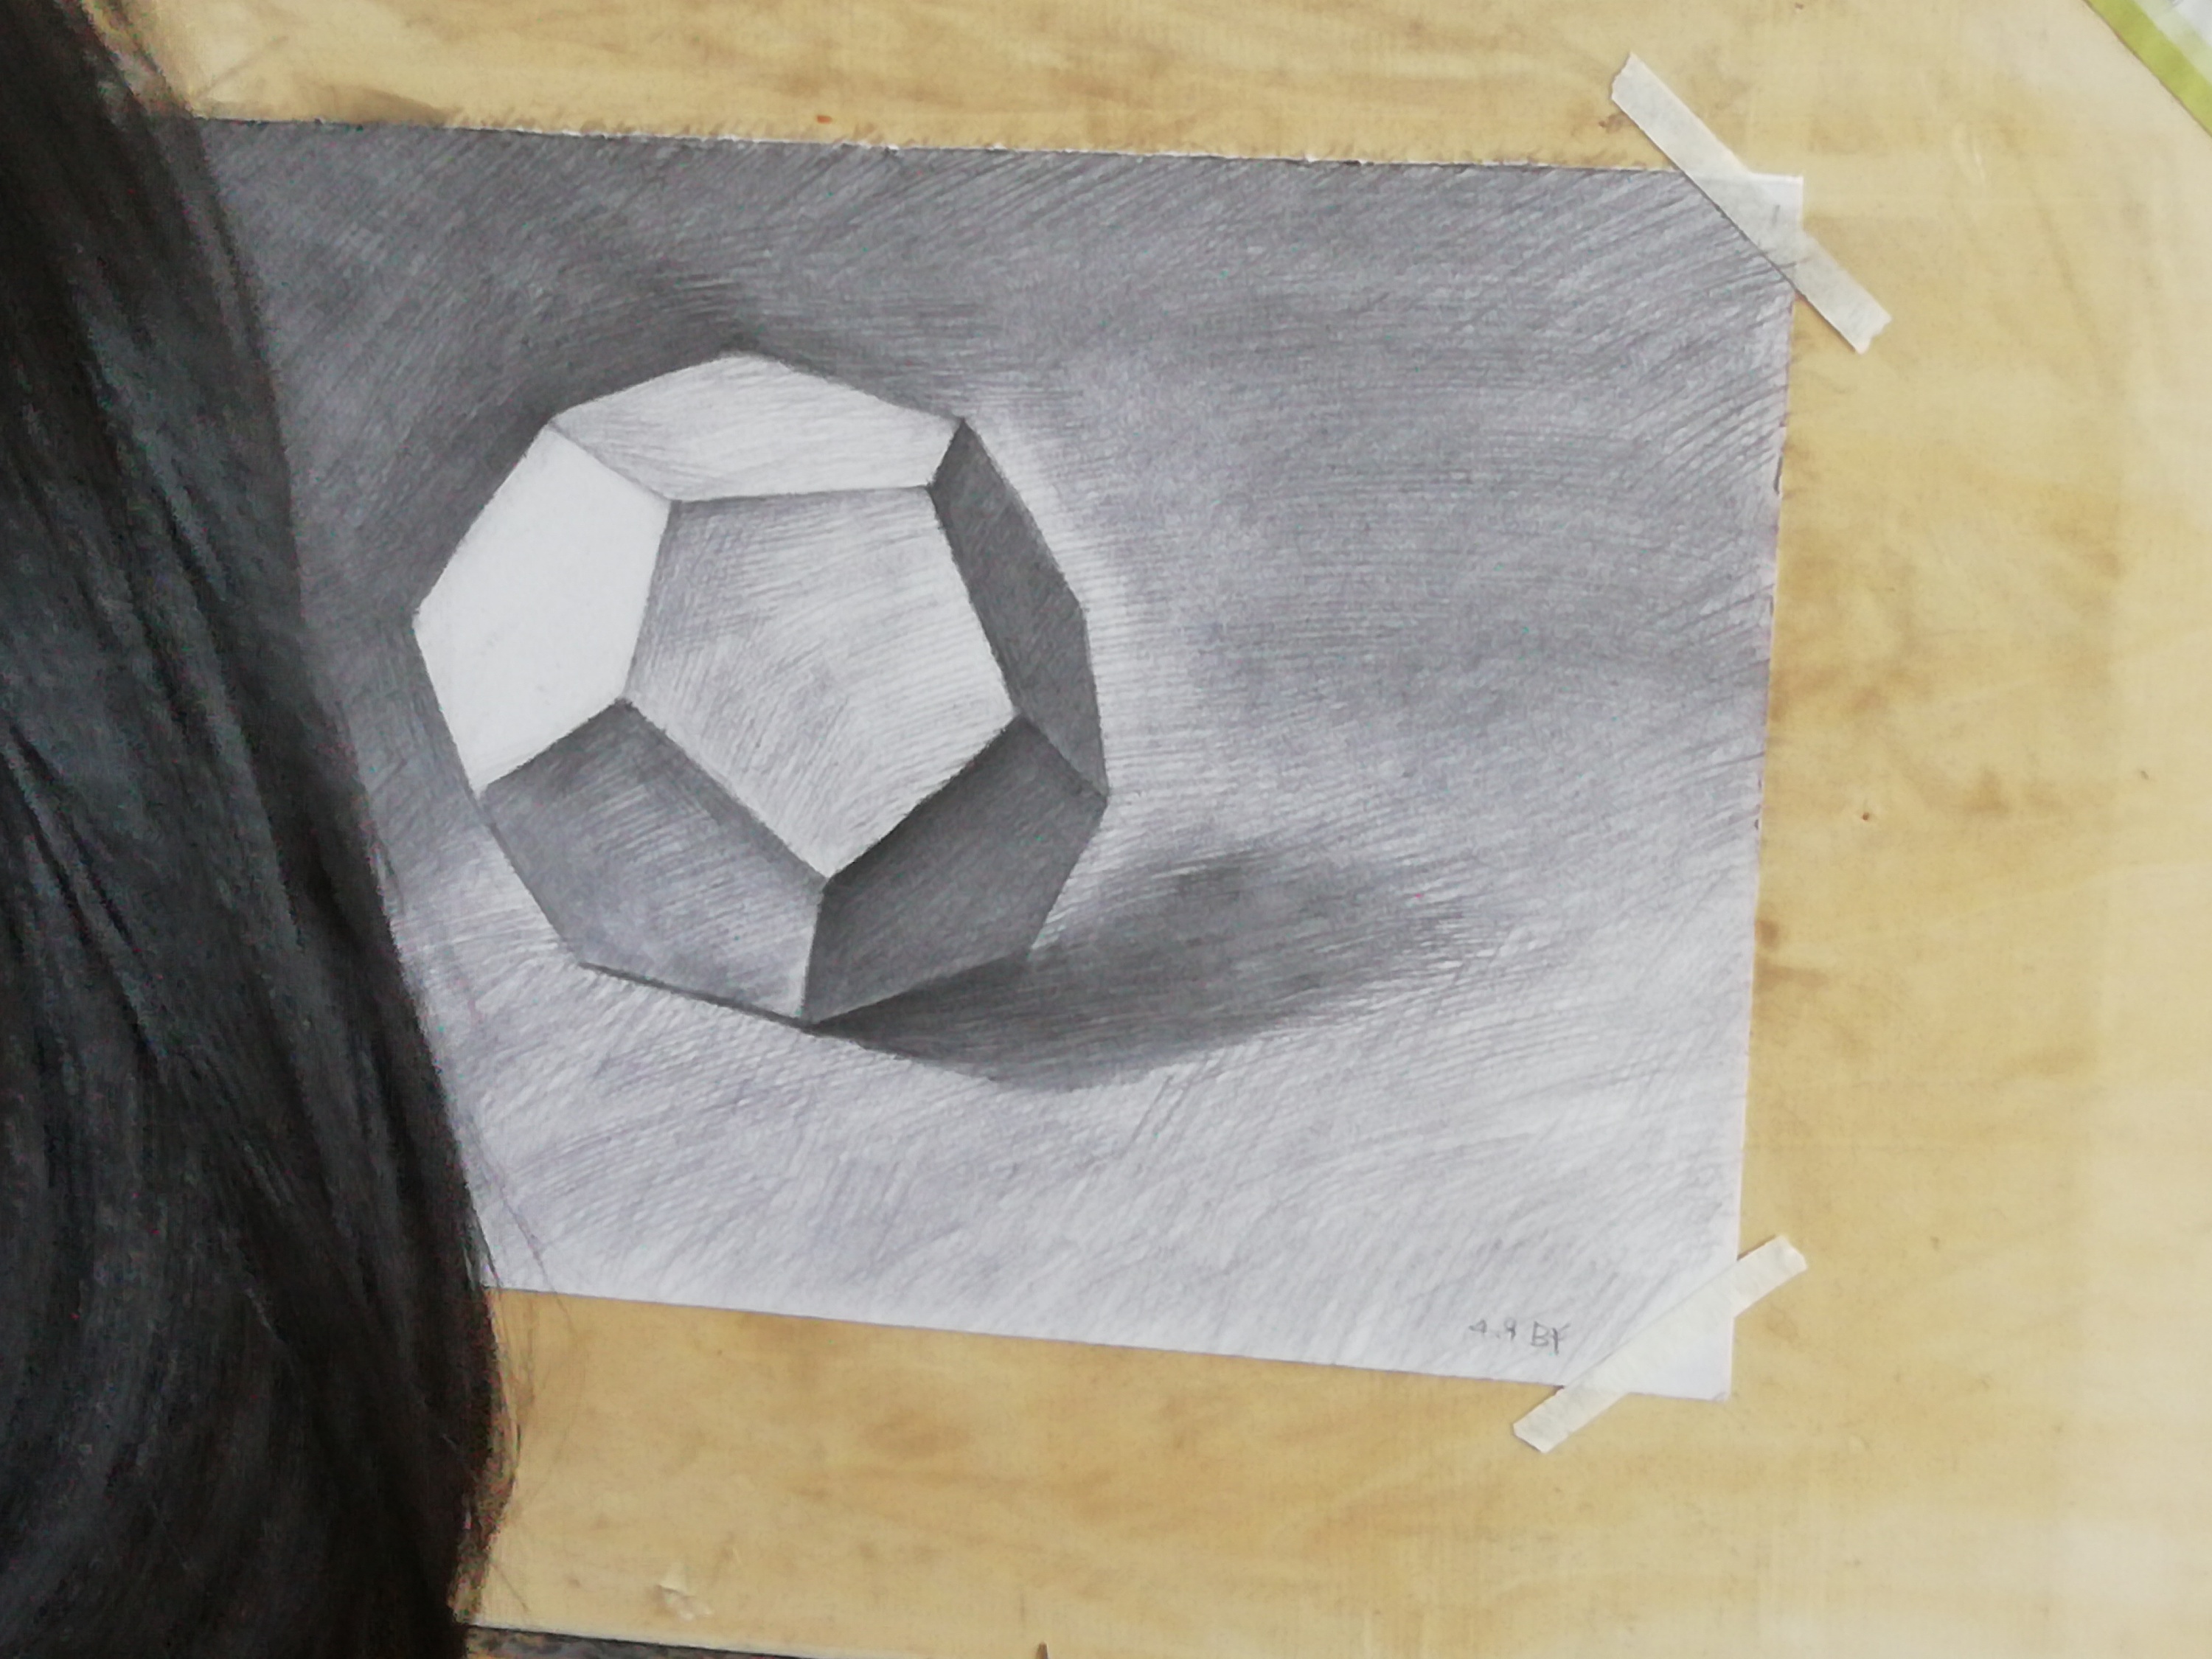 素描石膏几何体|纯艺术|素描|艺博乐创意袁博 - 临摹